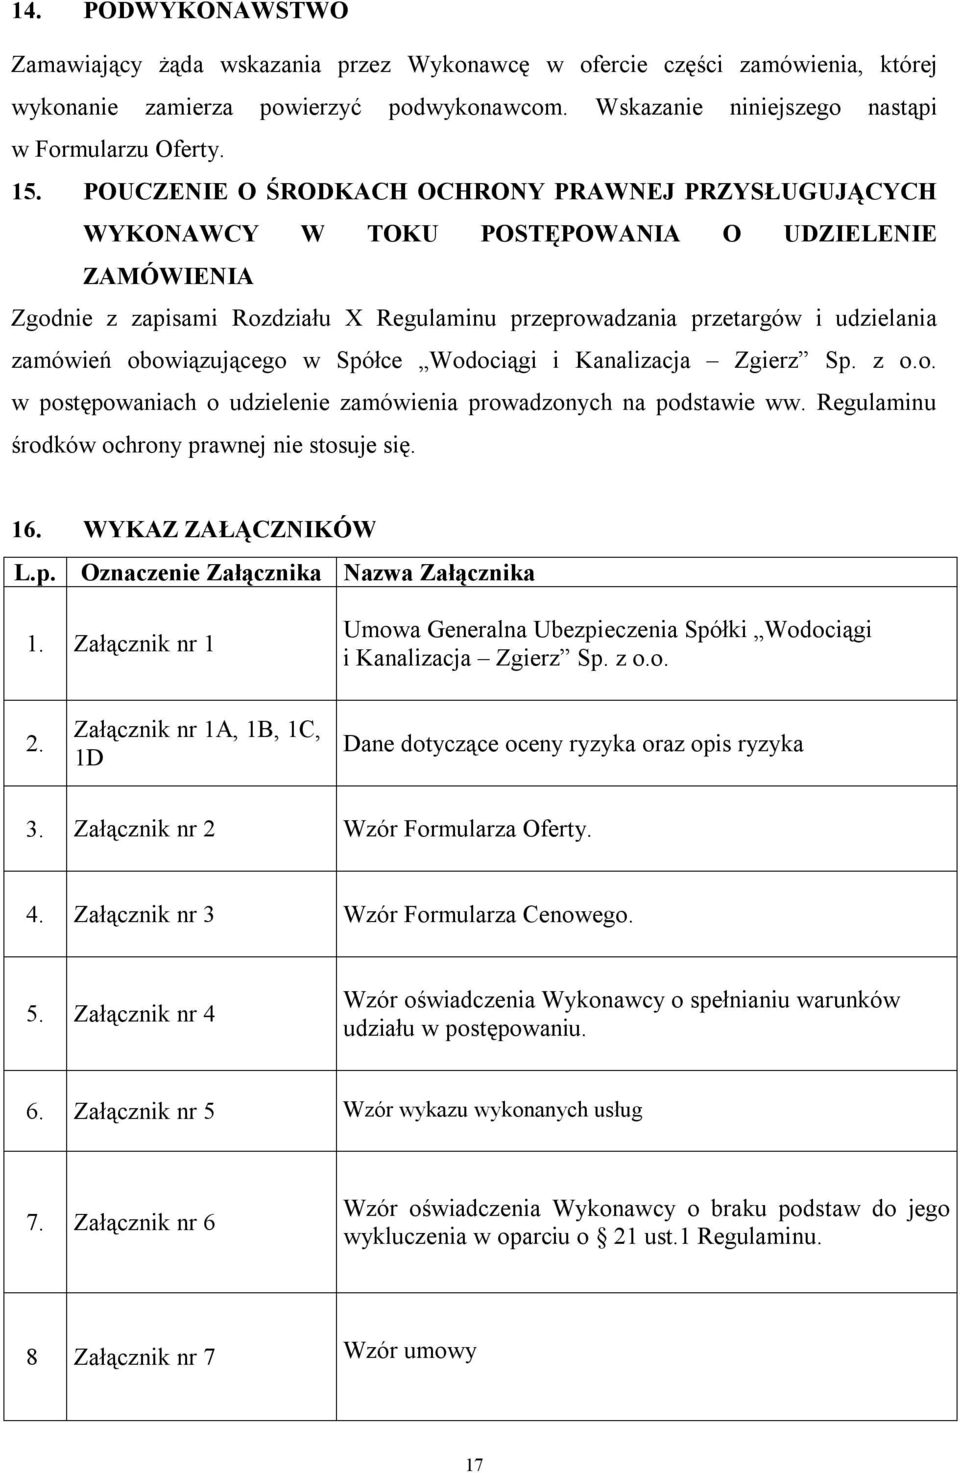 obowiązującego w Spółce Wodociągi i Kanalizacja Zgierz Sp. z o.o. w postępowaniach o udzielenie zamówienia prowadzonych na podstawie ww. Regulaminu środków ochrony prawnej nie stosuje się. 16.